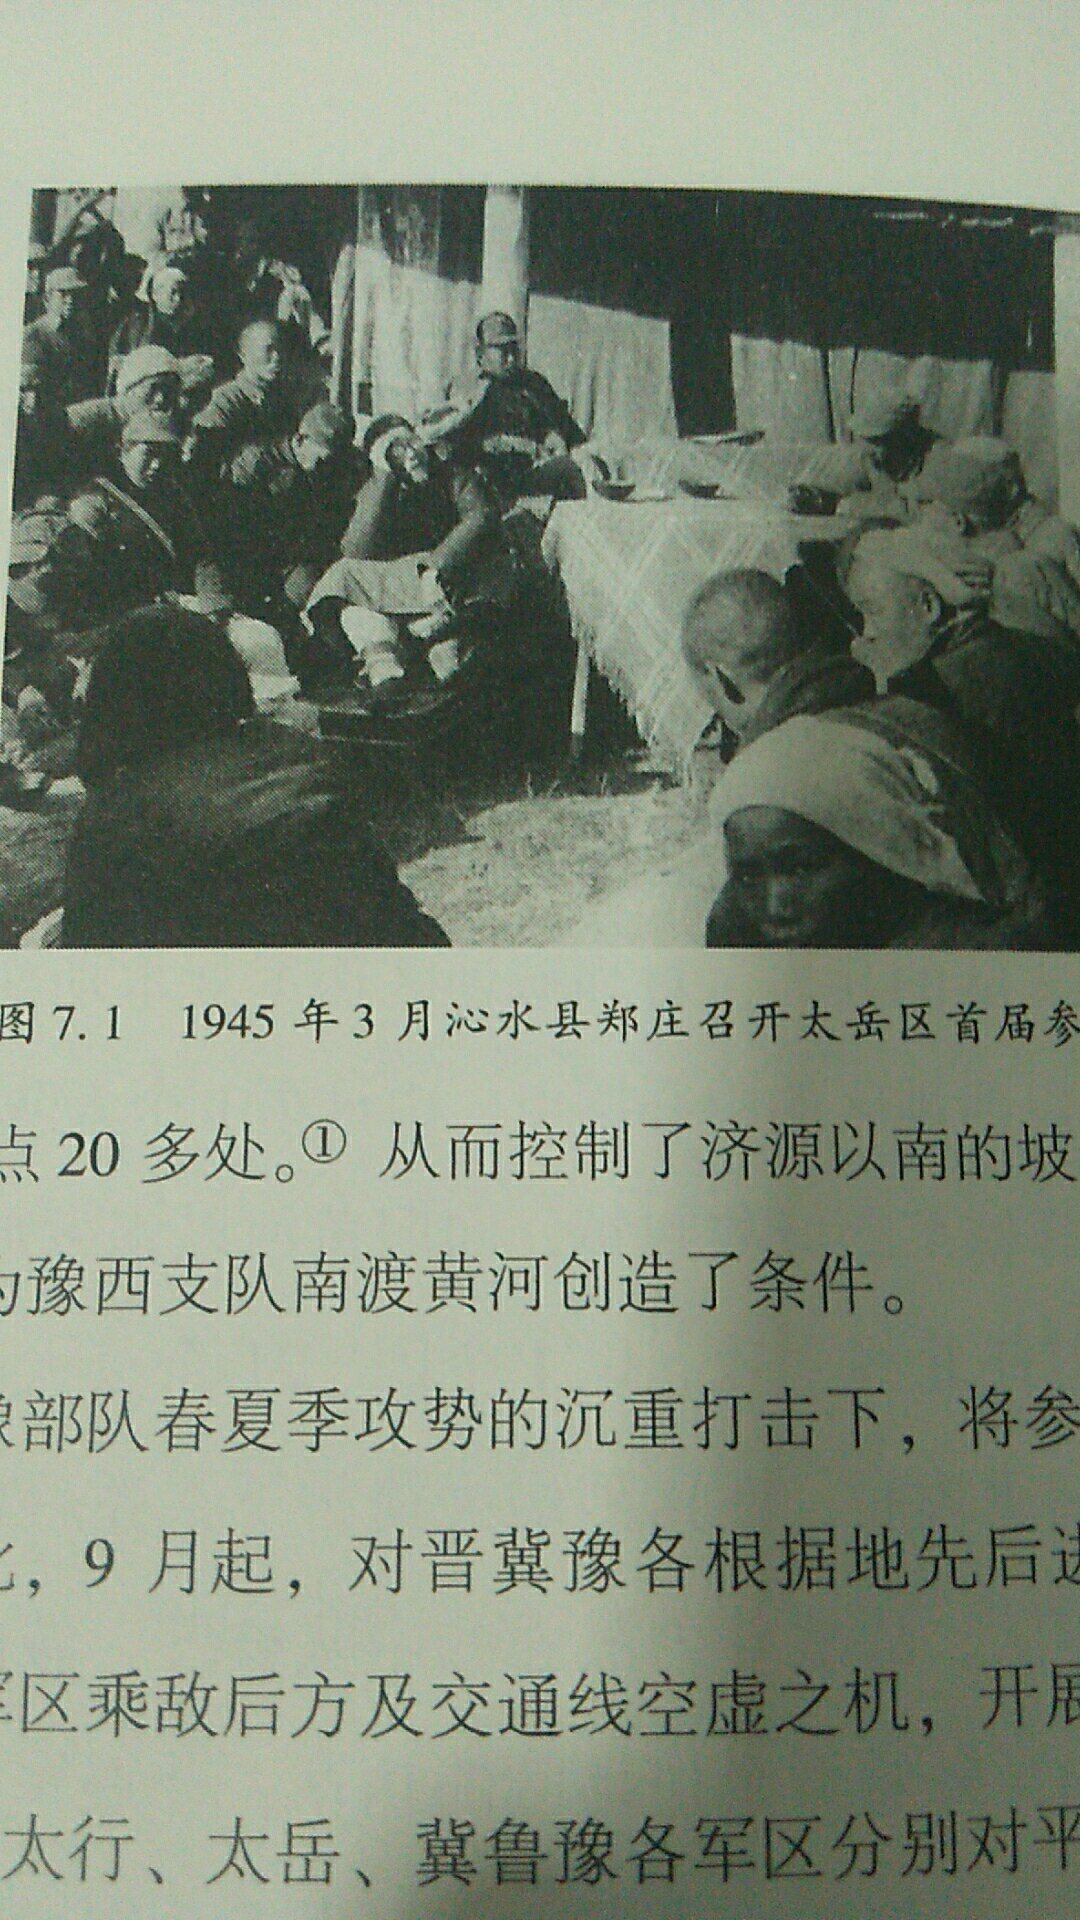 洋洋百万言，完整叙述了从1931年至1945年14年抗战的烽火历史，编织了一幅中国人民浴血奋战的抗战图卷。